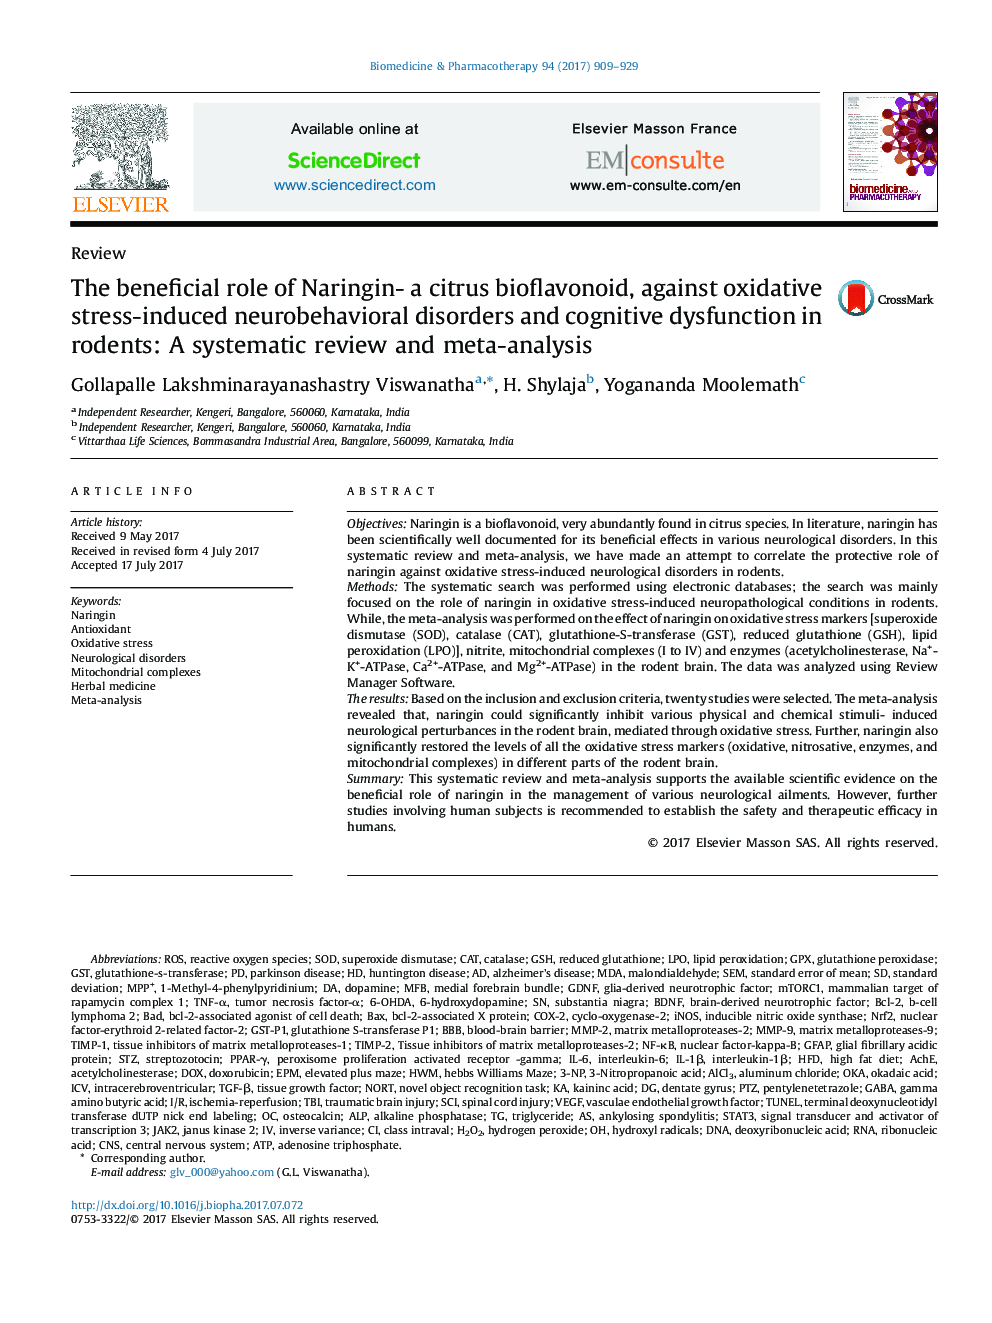 نقش مفید ناریانینین - بیوفلاونوئید مرکبات در برابر اختلالات عاطفی عصبی و اختلال شناختی ناشی از استرس اکسیداتیو در جوندگان: یک بررسی منظم و متاآنالیز 